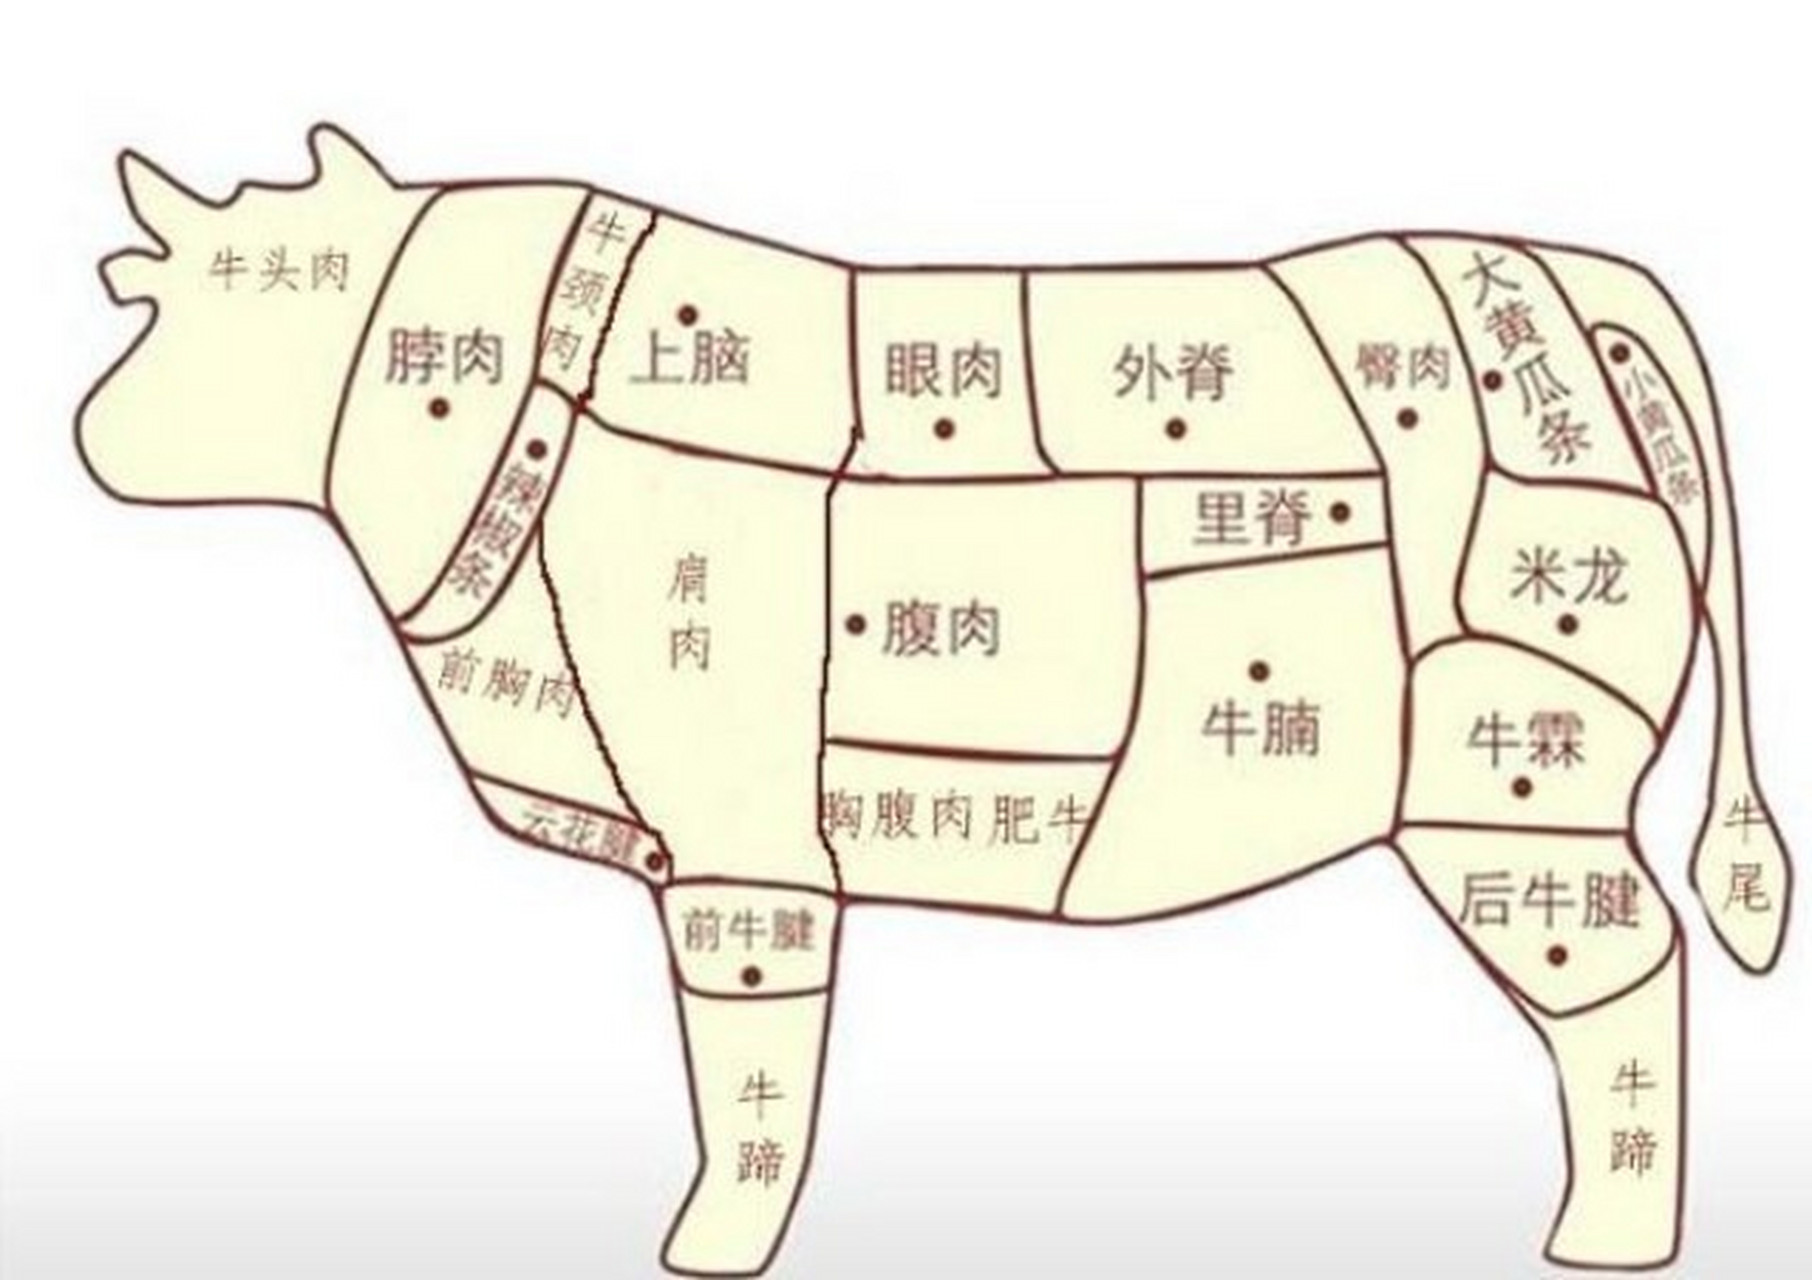 牛肉部位分割图图解图片